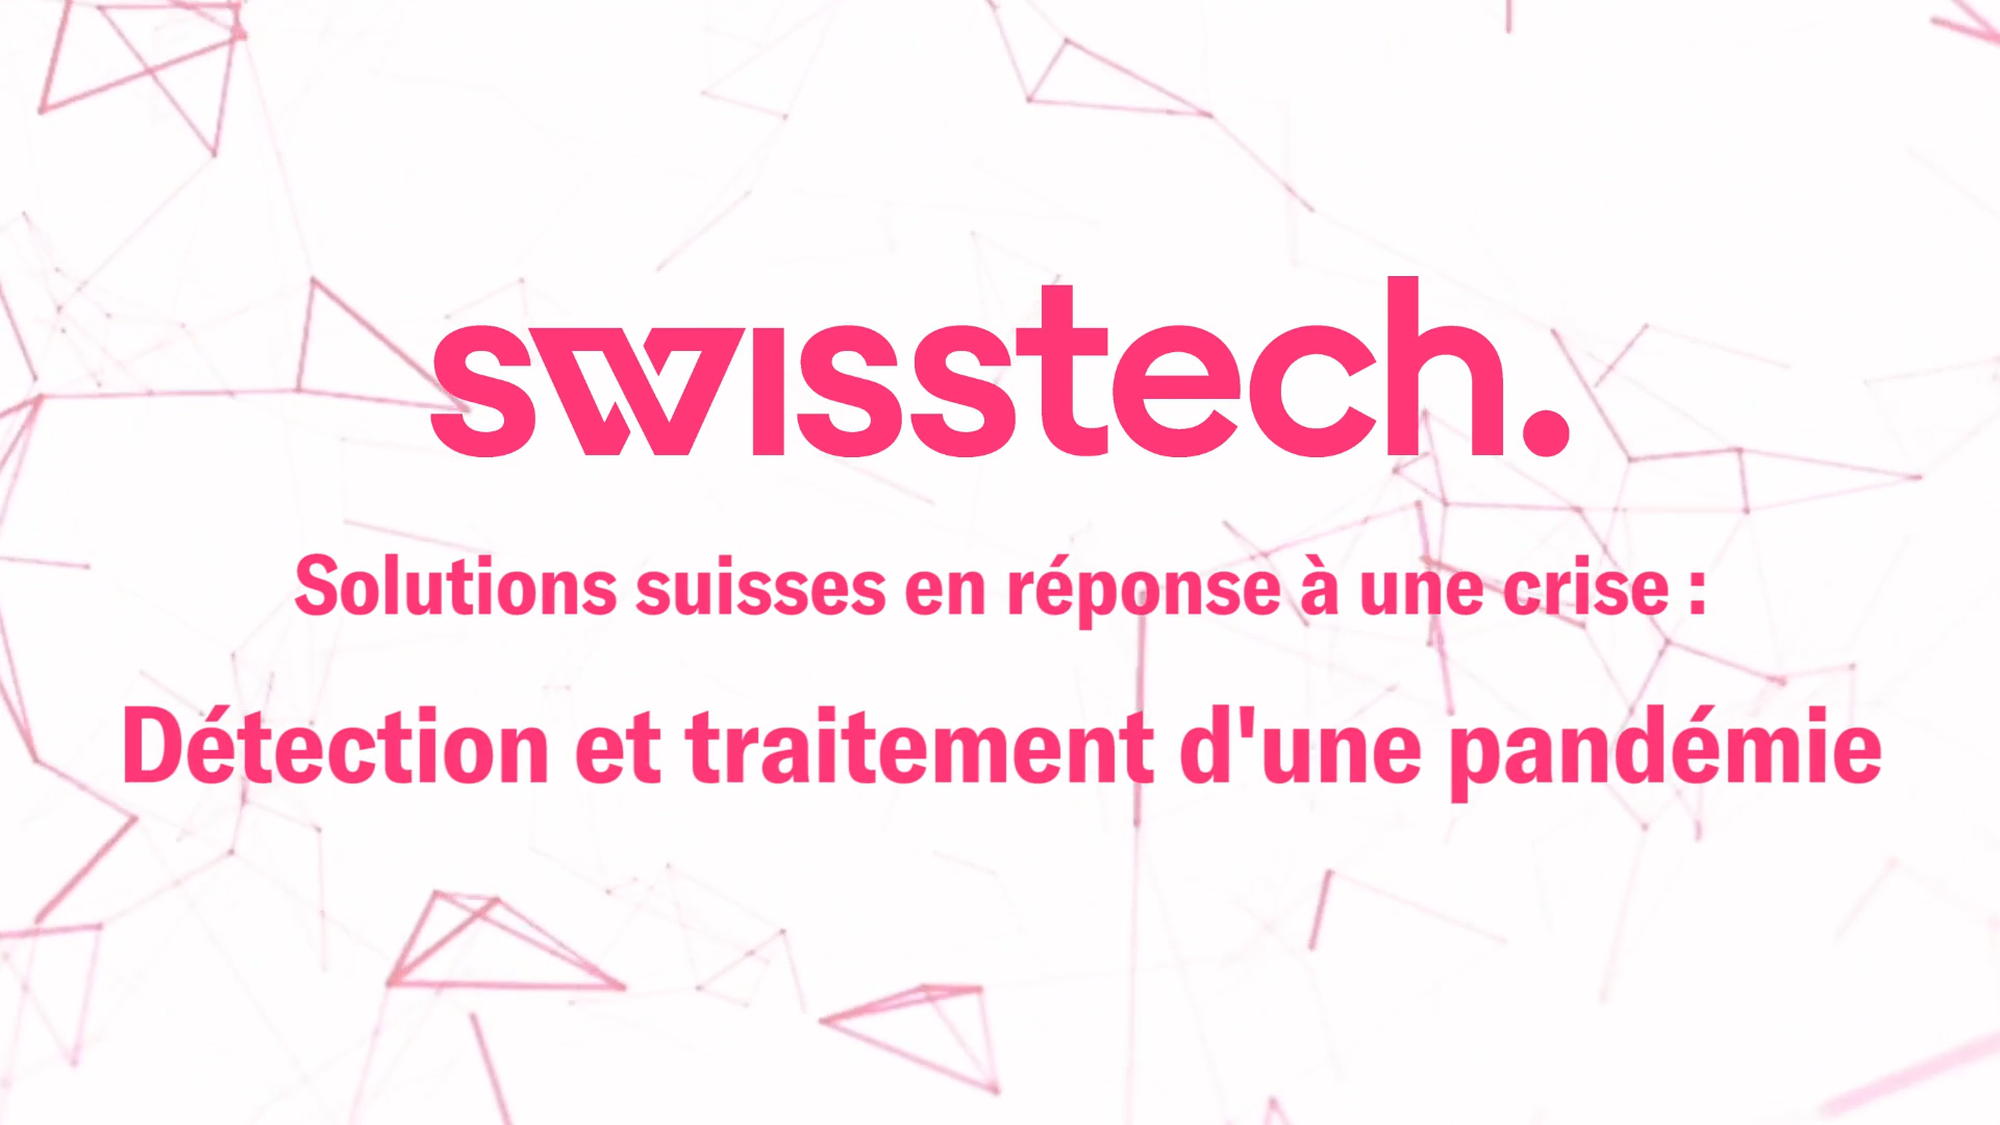 Swisstech webinar “Solutions suisses en réponse à une crise : Détection et traitement d’une pandémie »